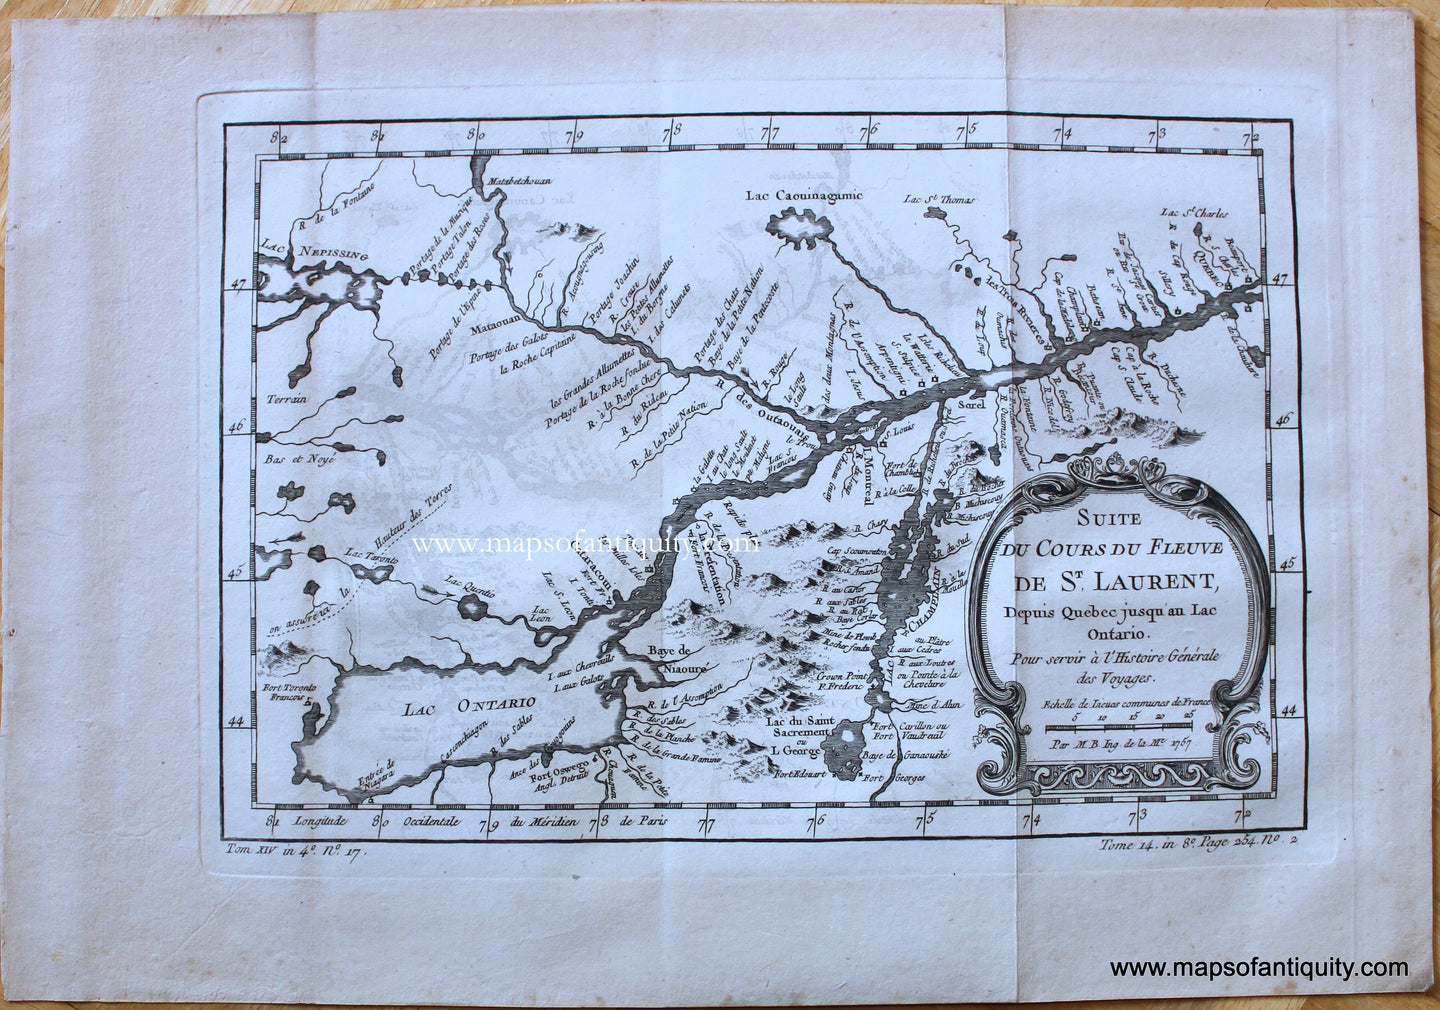 Antique-Map-Suite-du-Cours-du-Fleuve-de-St.-Laurent-Depuis-Quebec-jusqu'au-Lac-Ontario-Pour-servir-a-l'Histoire-Generale-des-Voyages-Canada-French-Bellin-1757-1750s-Mid-18th-Century-Maps-of-Antiquity